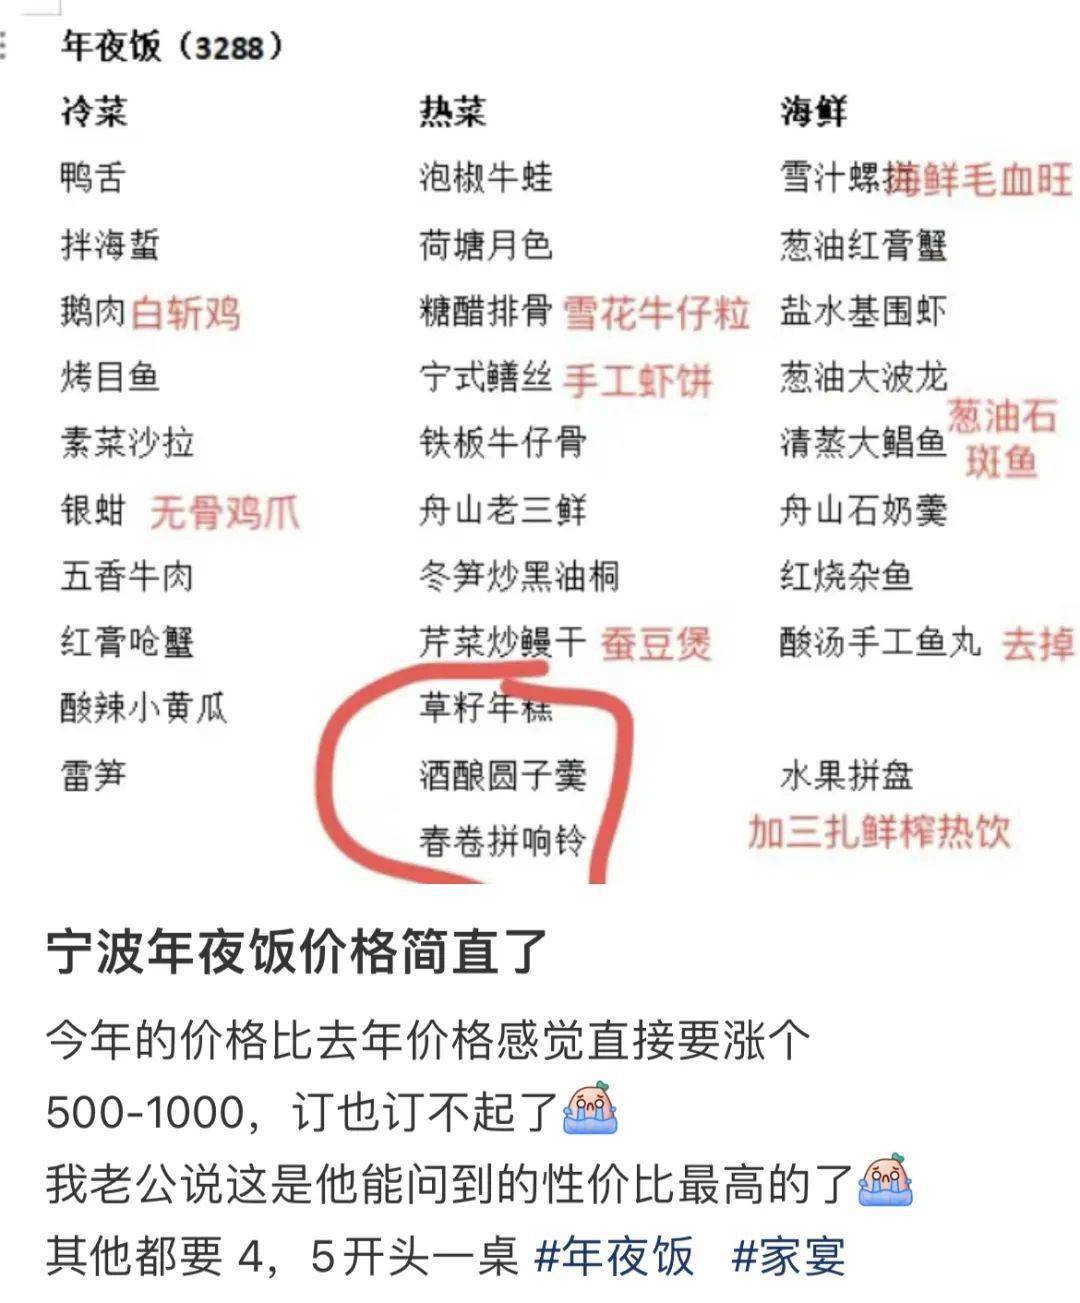 宁波知名饭店春节海鲜价格创历史新高,大带鱼959元一条!